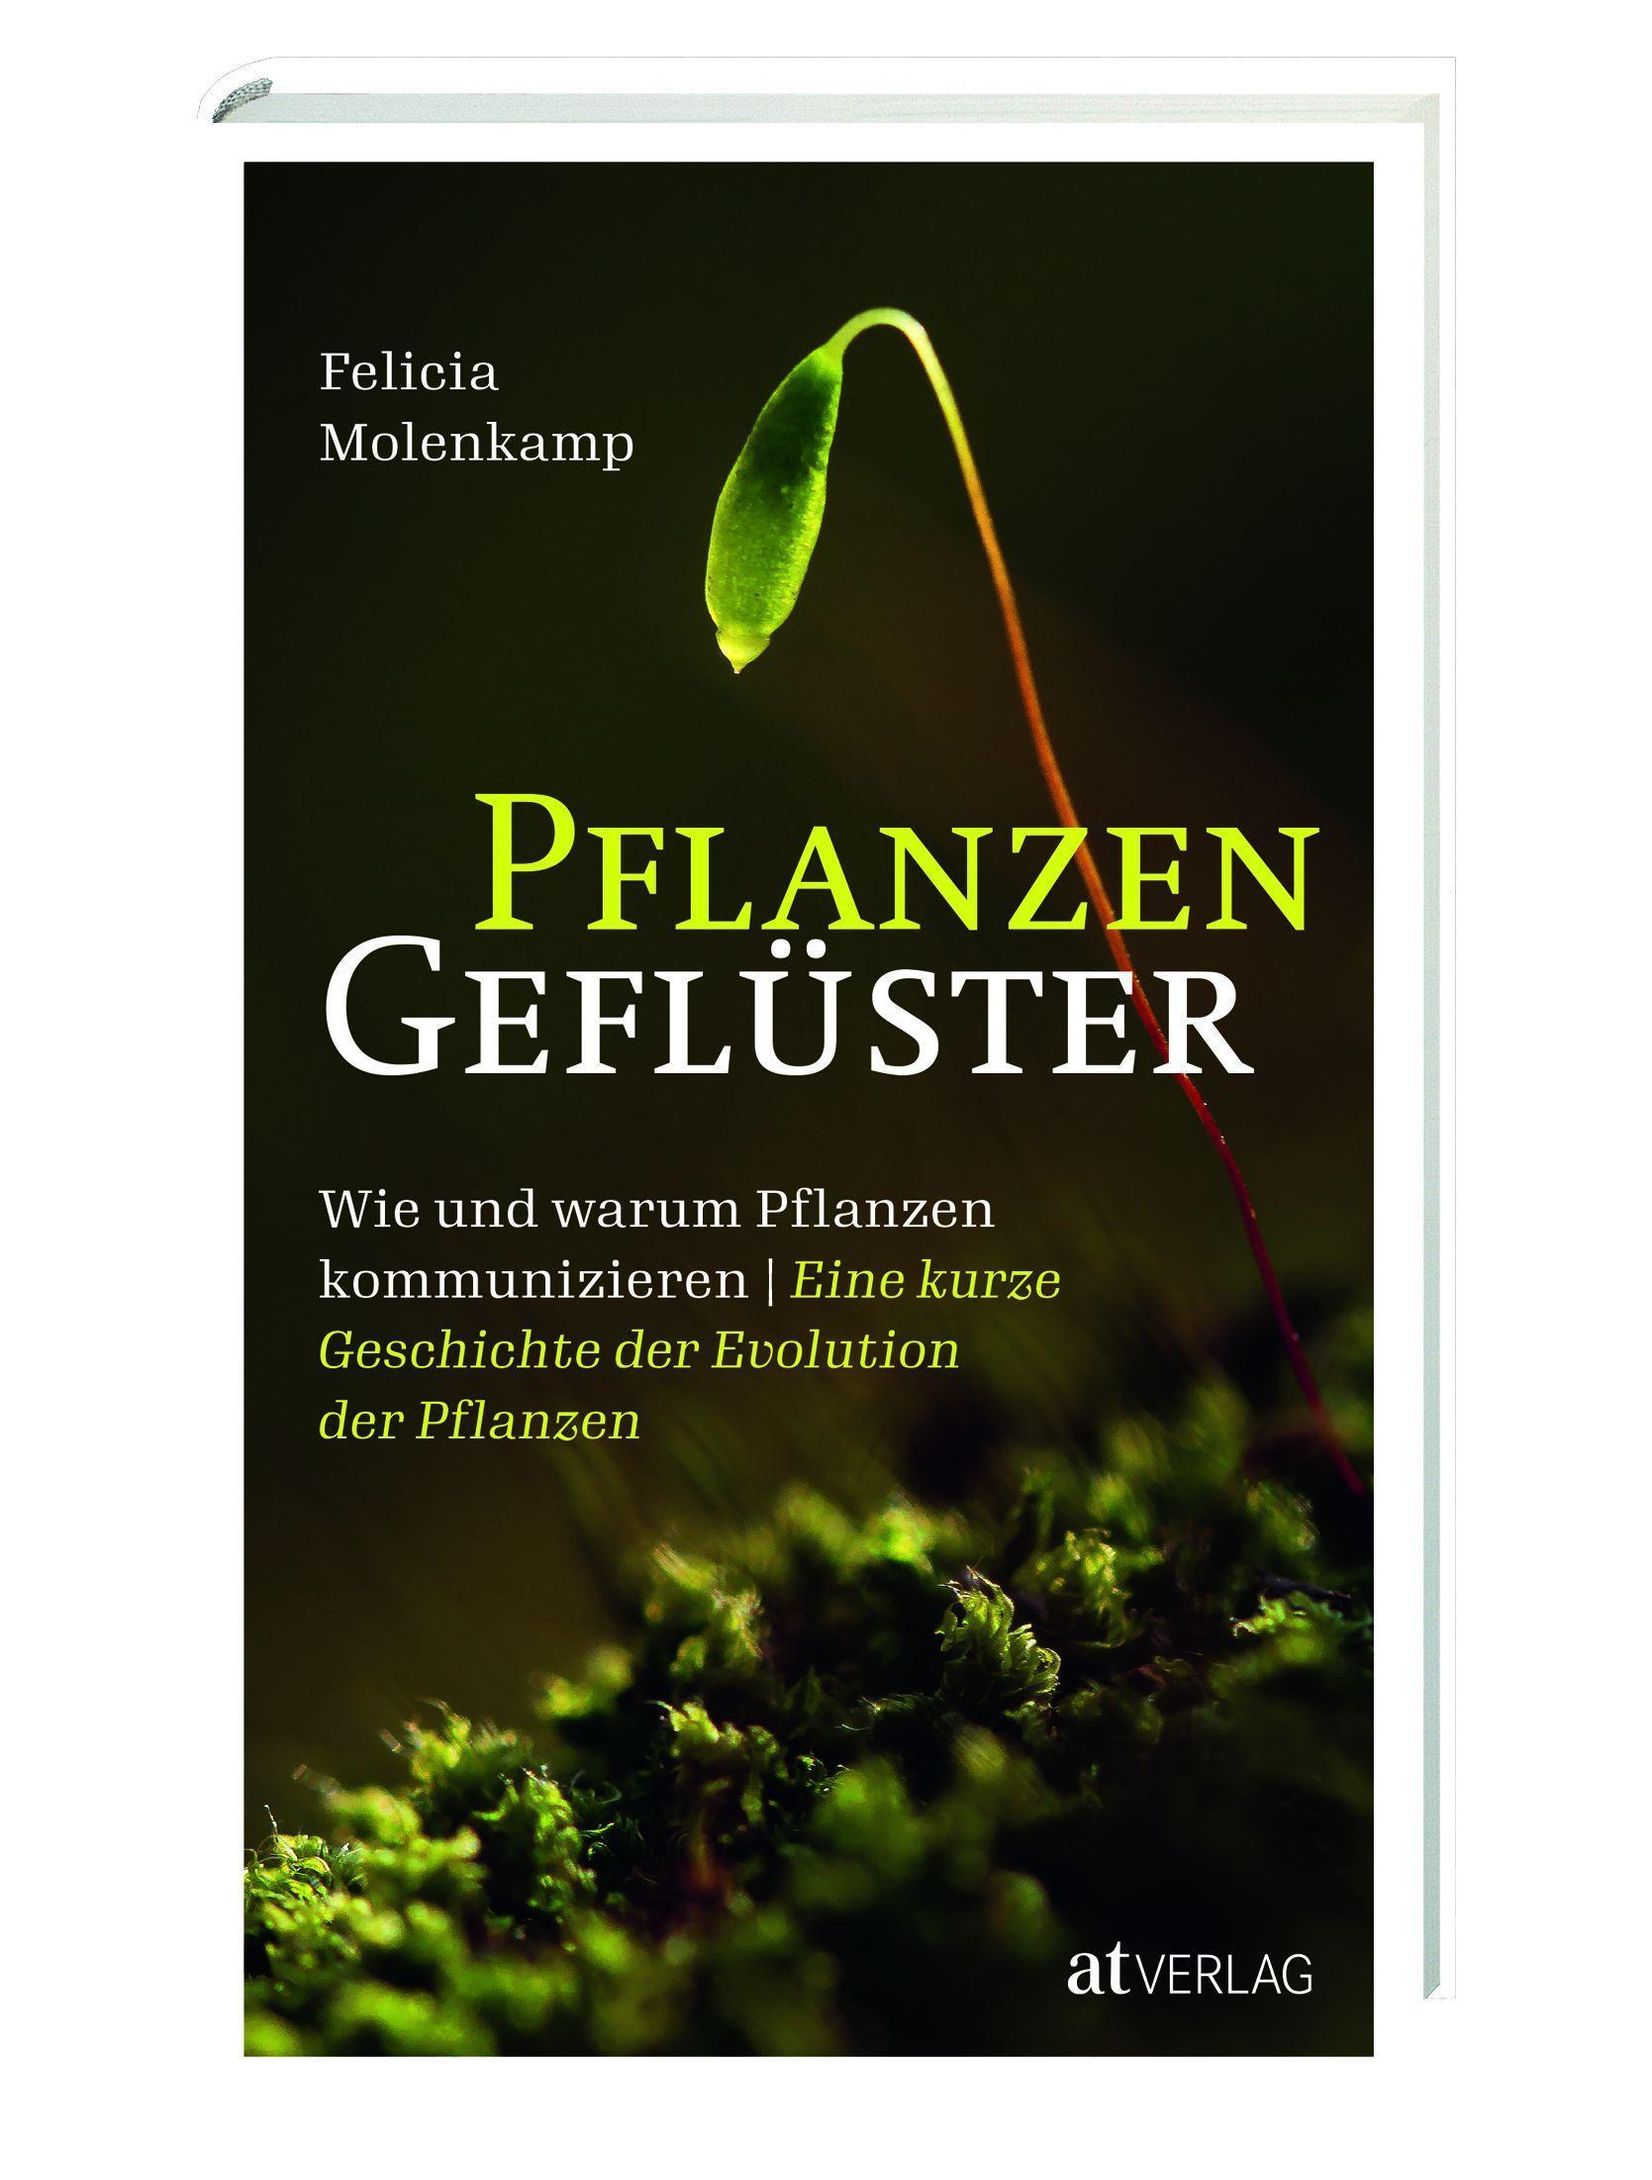 Pflanzengeflüster Buch von Felicia Molenkamp versandkostenfrei kaufen